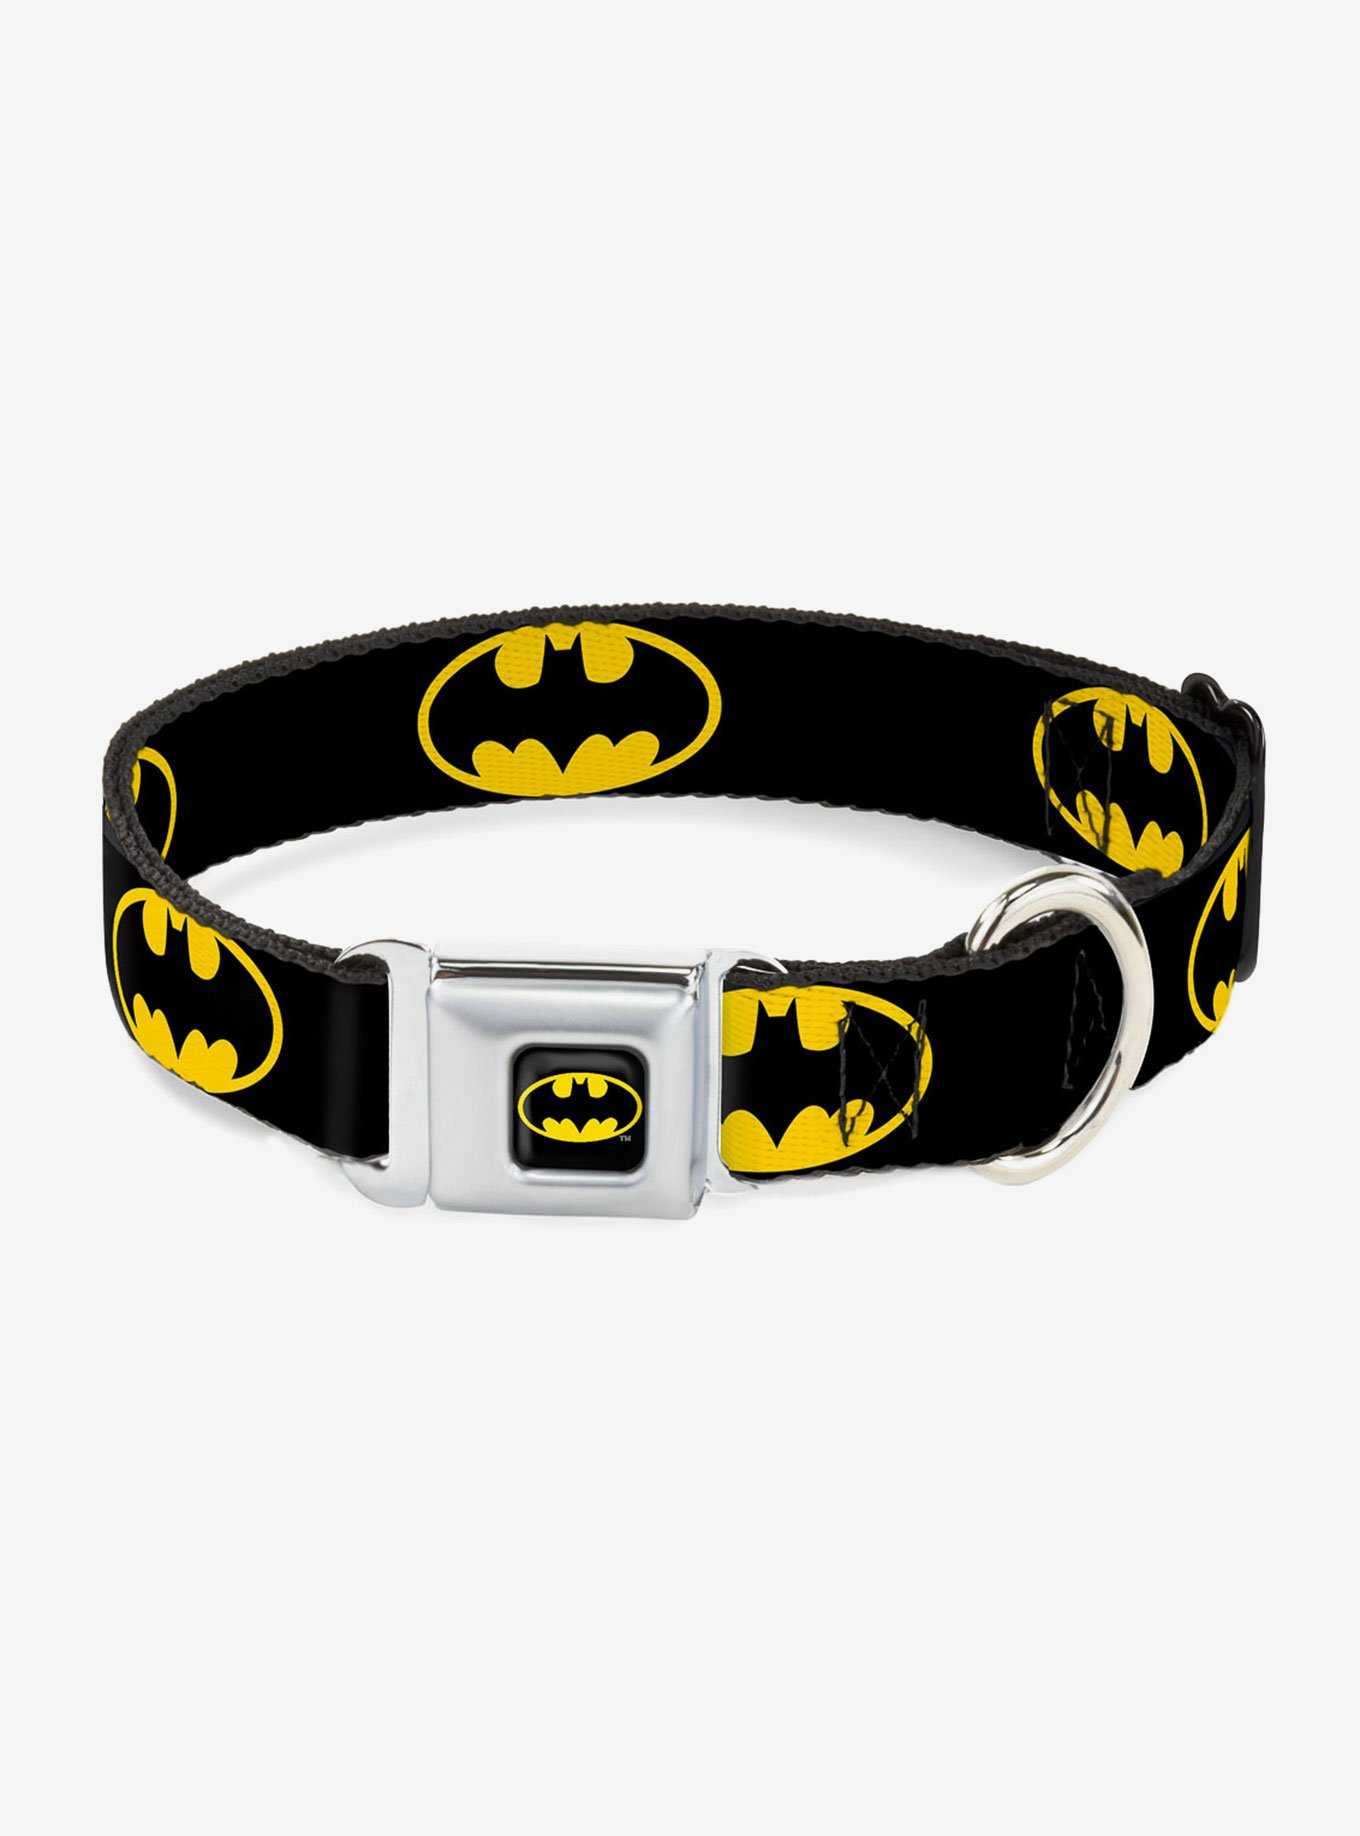 DC Comics Justice League Batman Shield Black Yellow Seatbelt Buckle Pet Collar, , hi-res